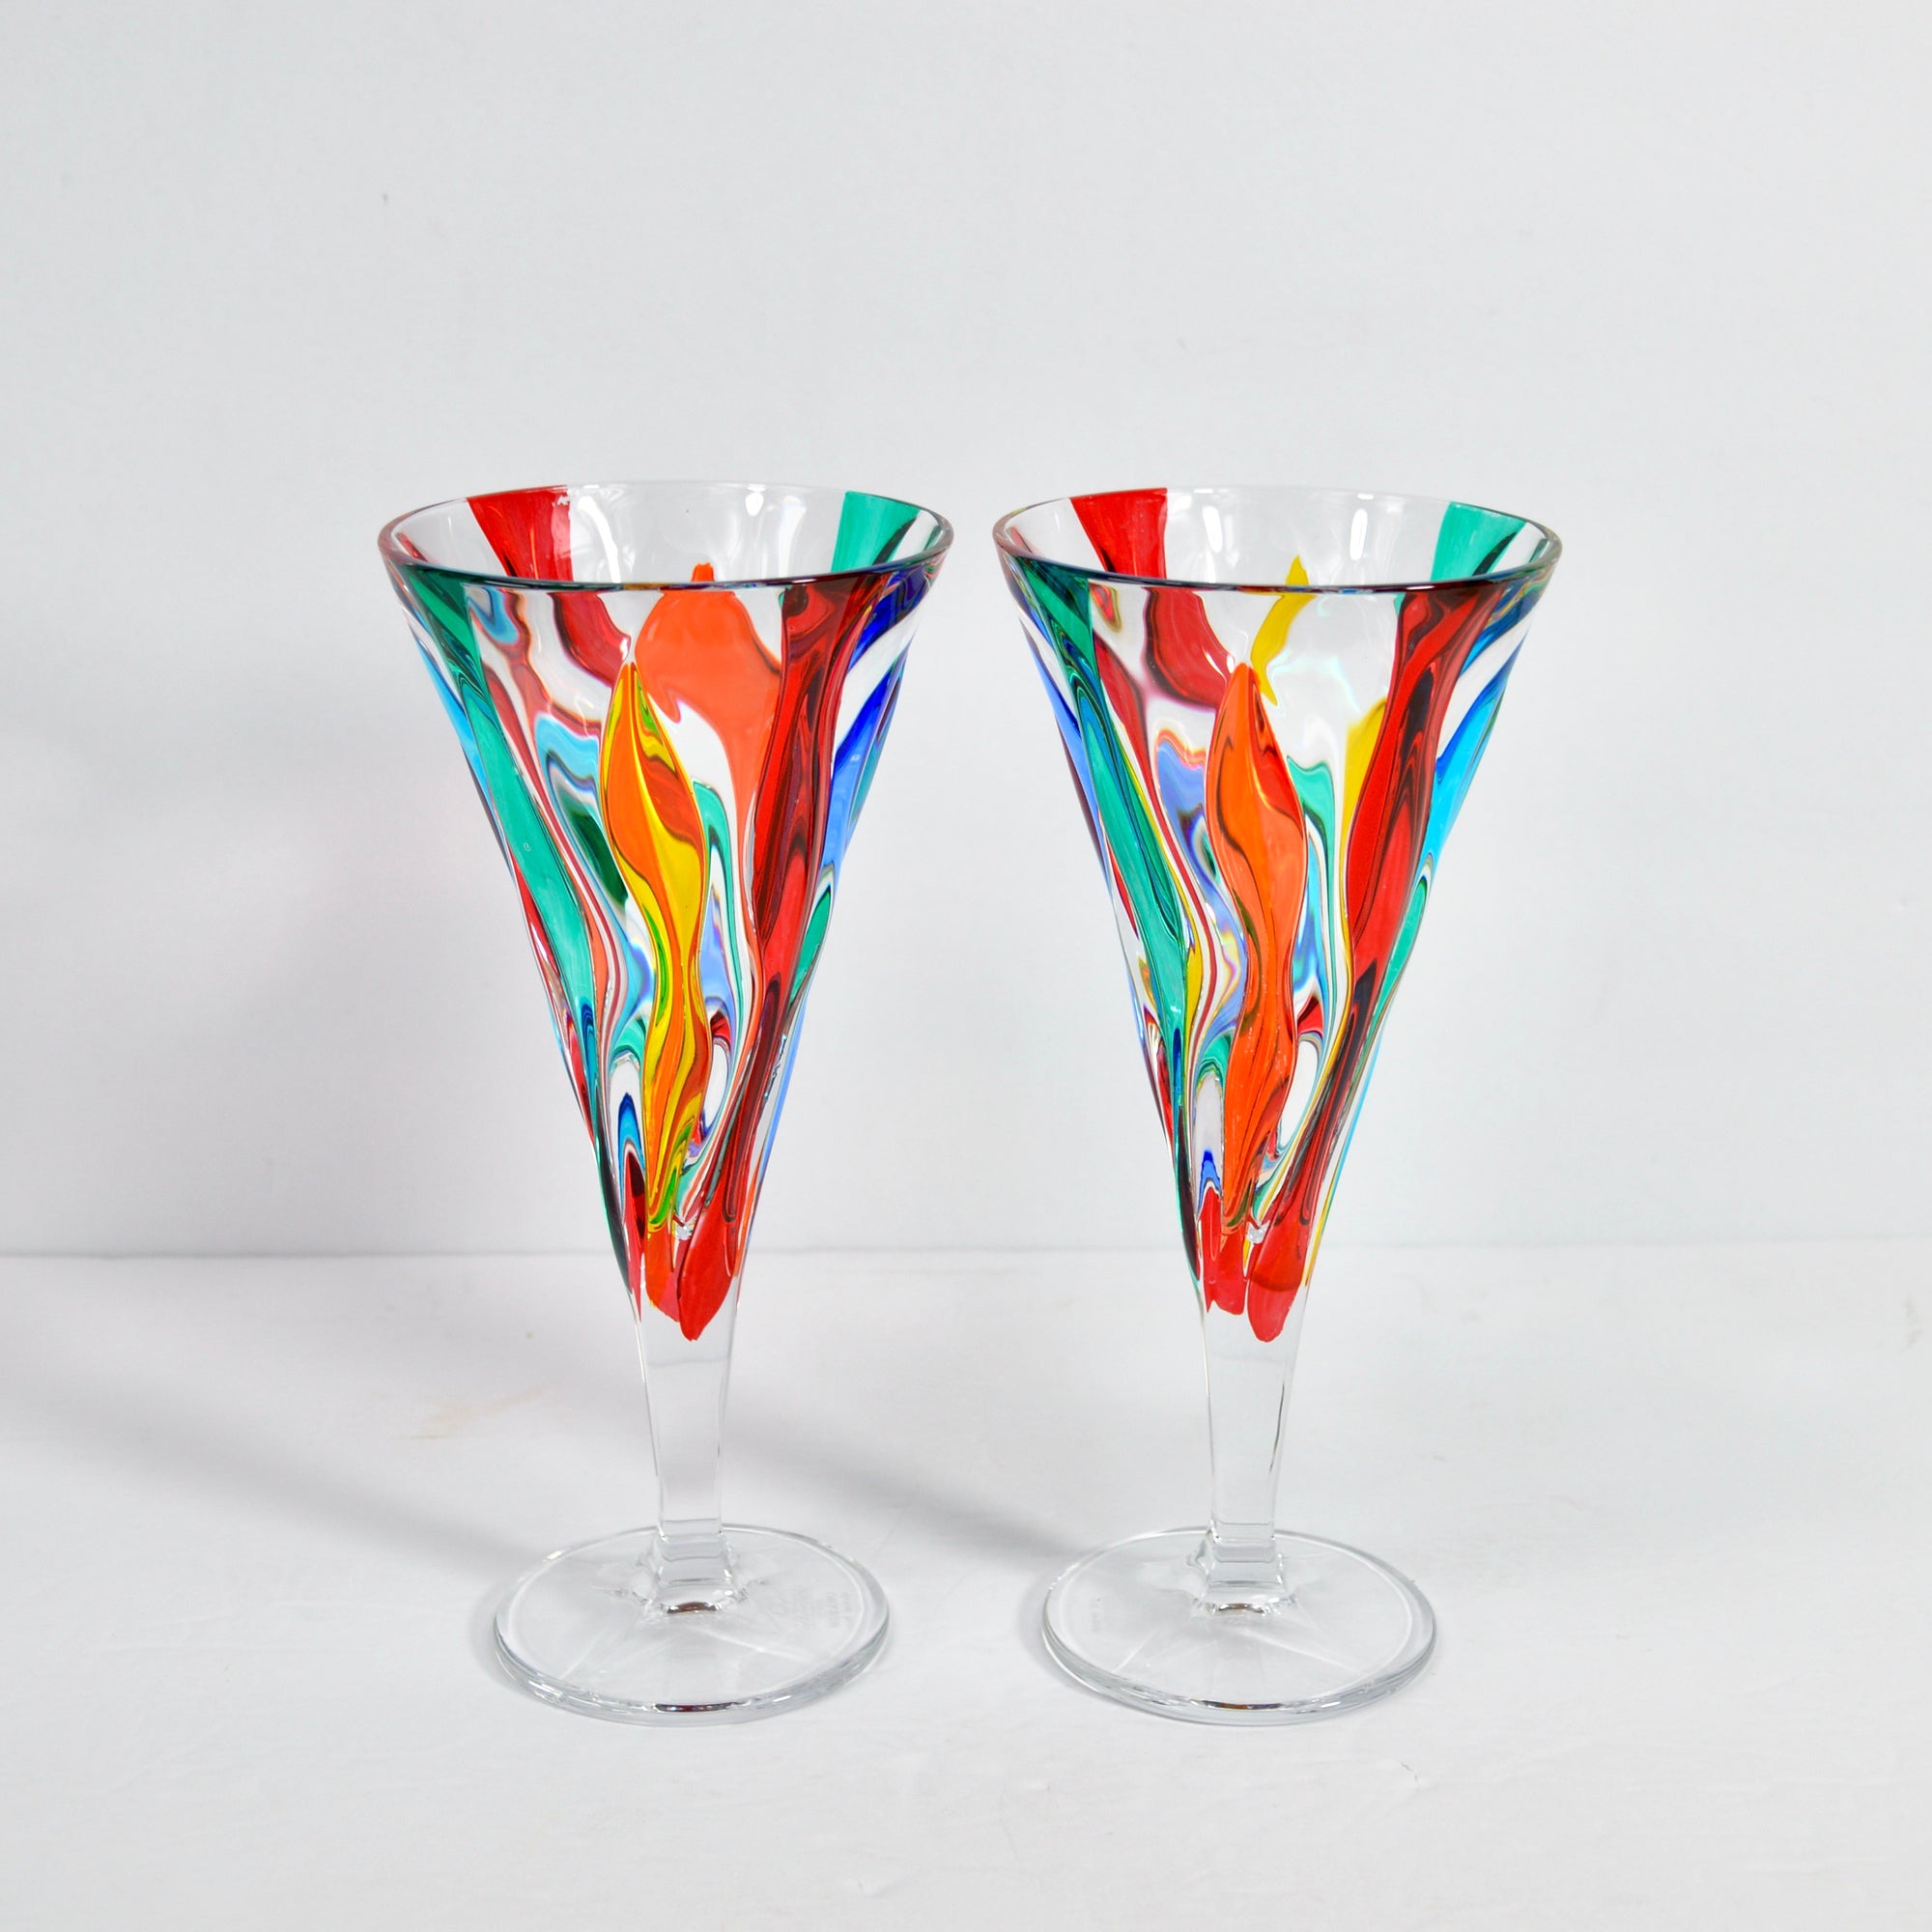 Jazz Italian Crystal Wine Glasses, Set of 2, Made in Italy - My Italian Decor